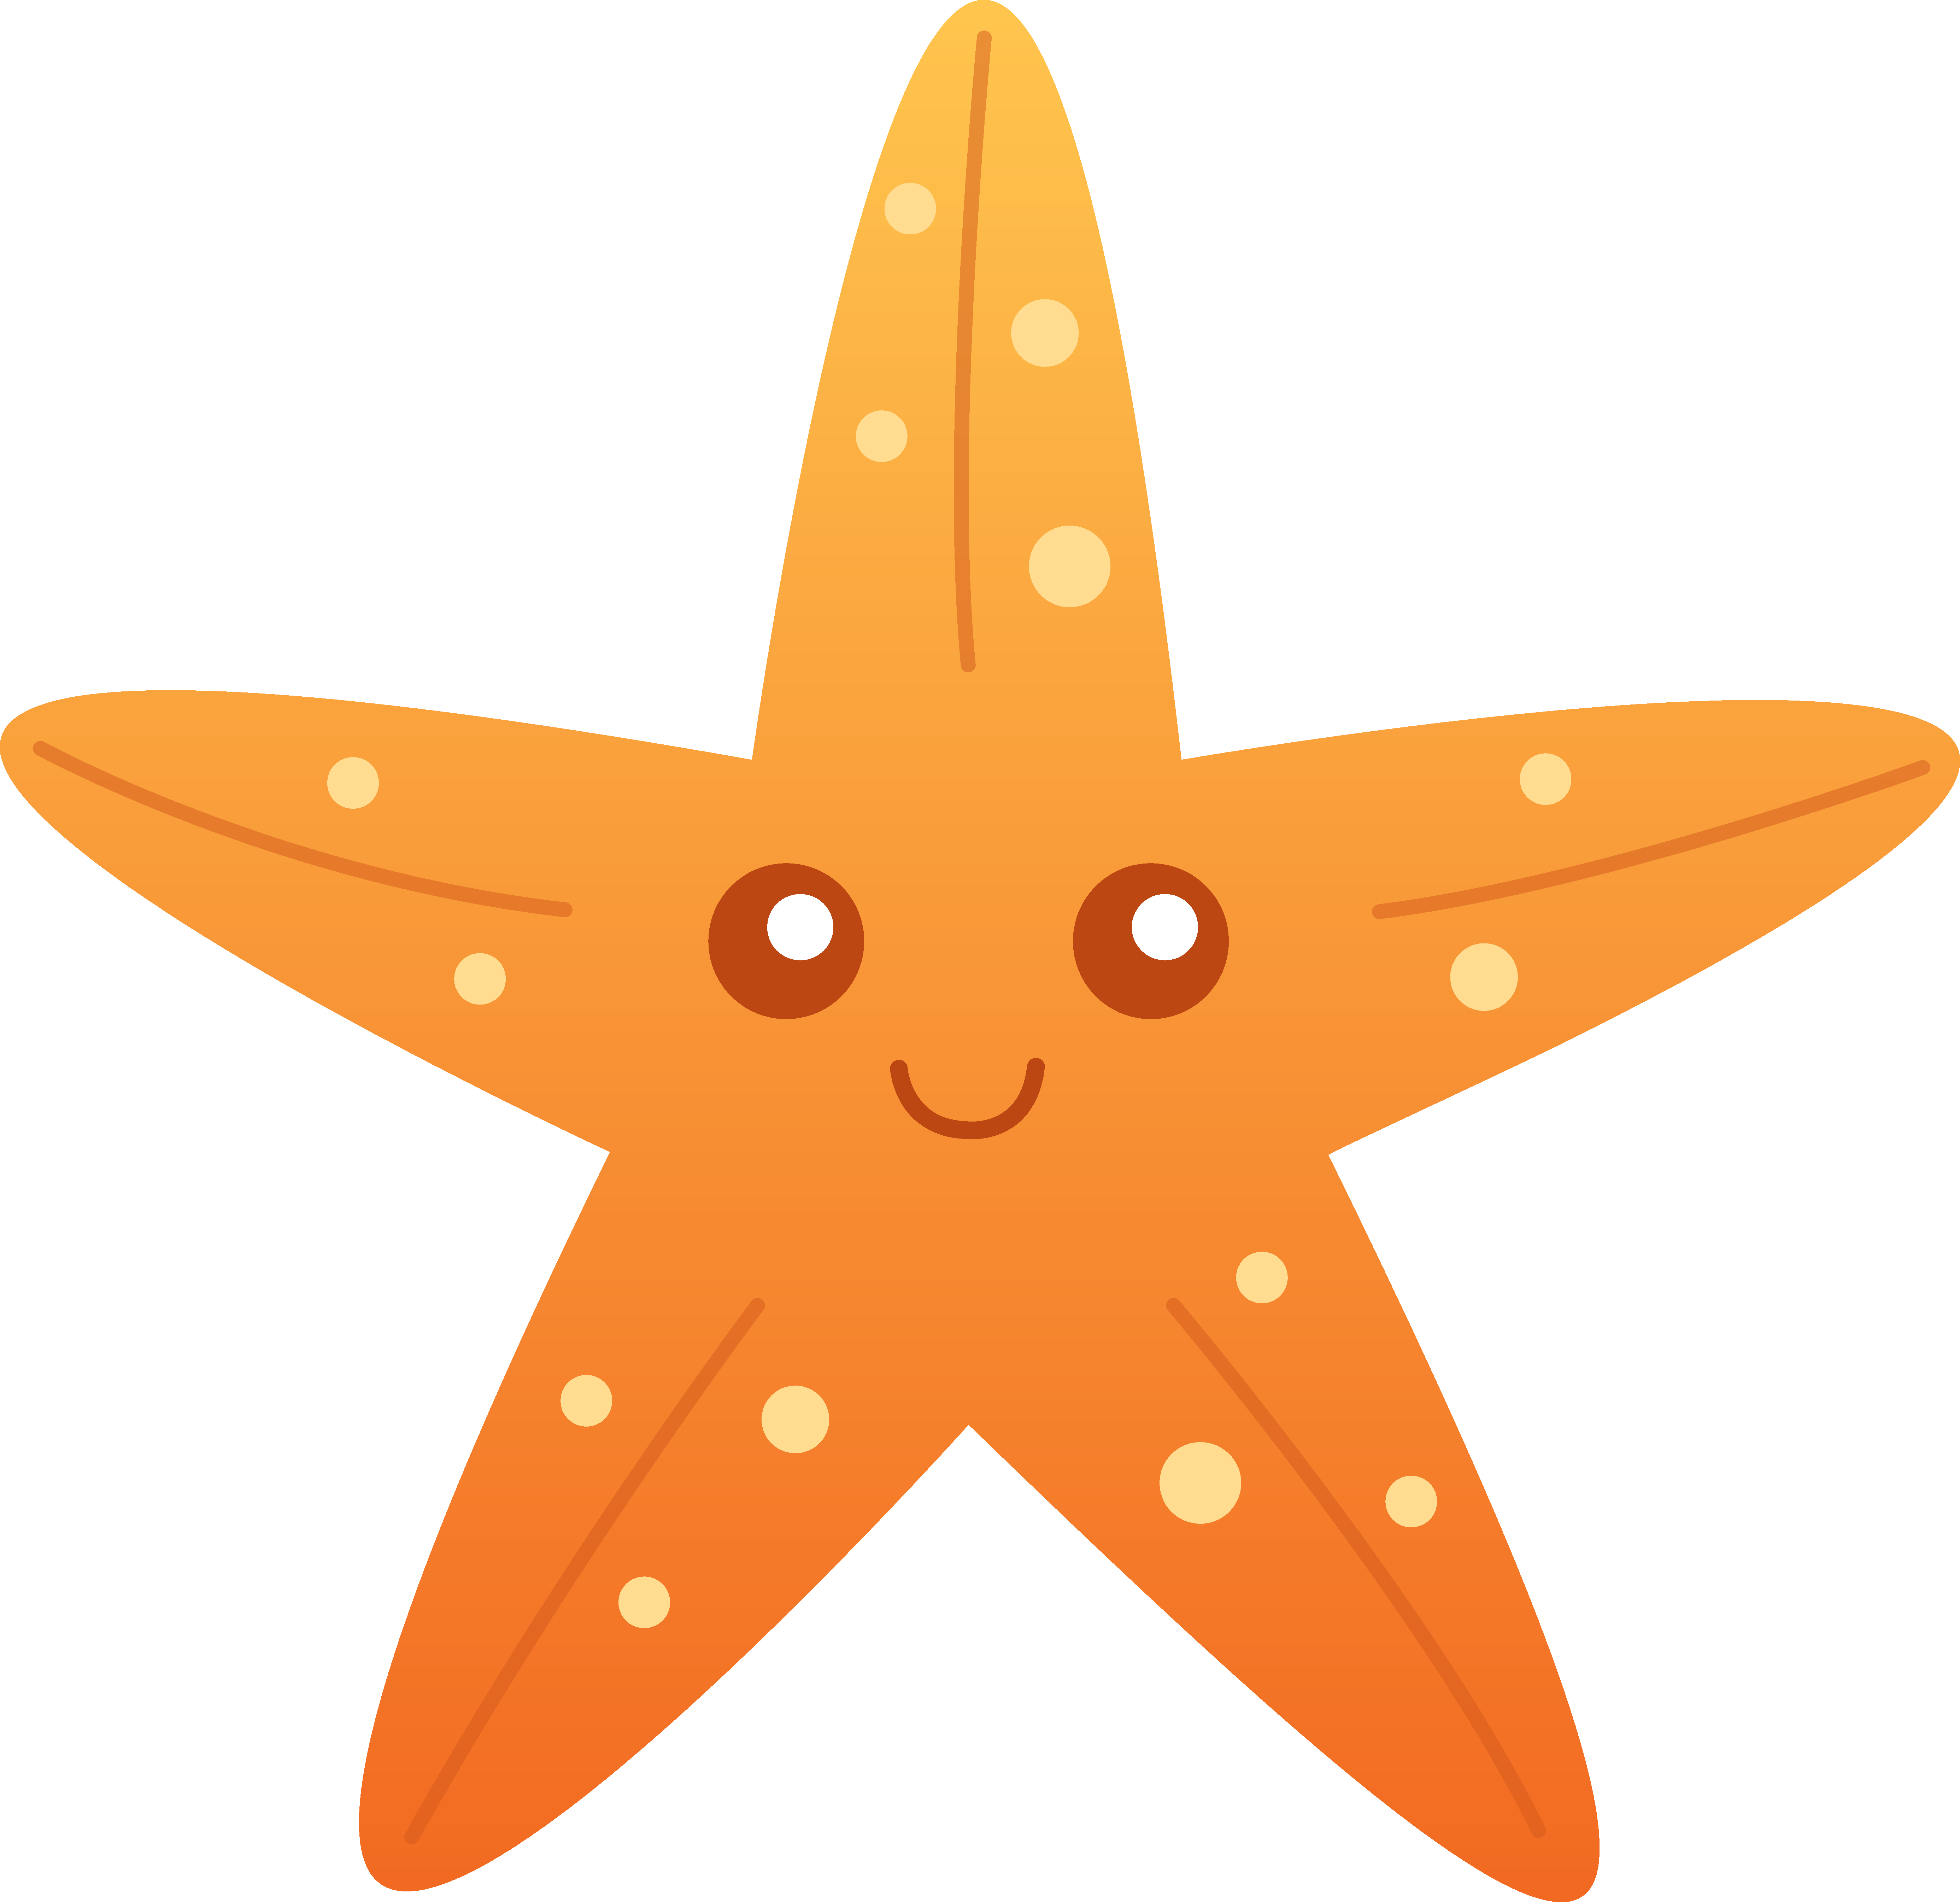 Cute starfish panda free. Girly clipart star